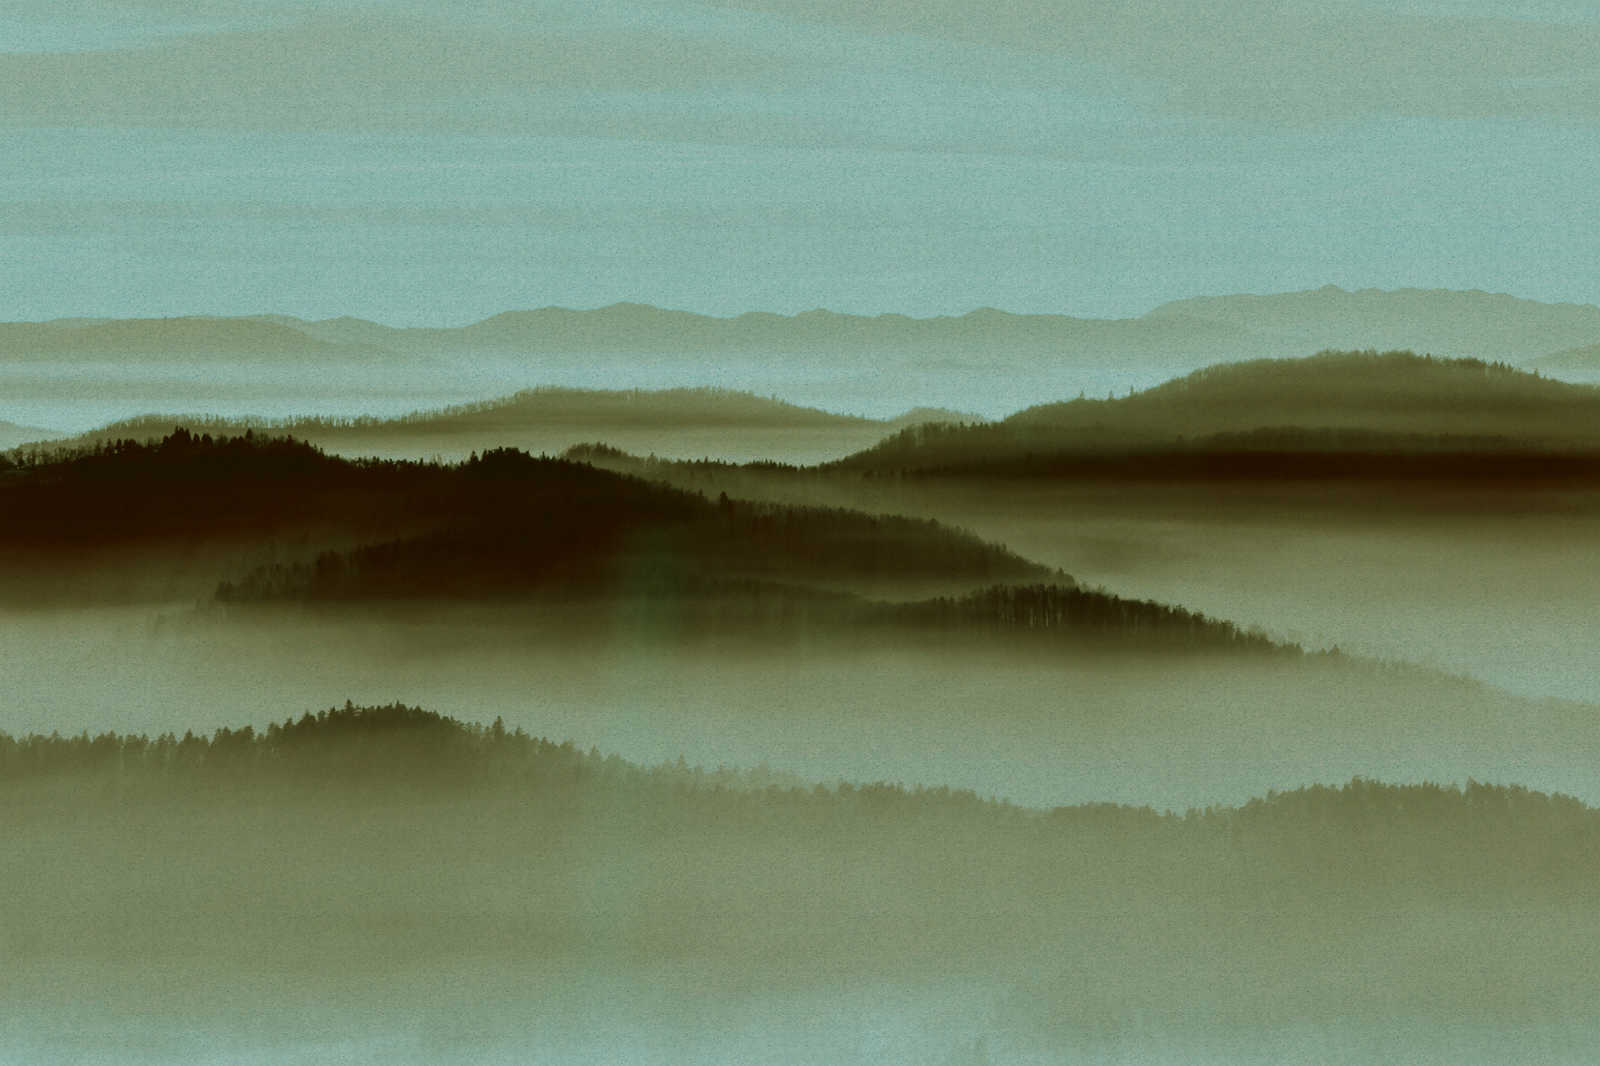             Horizon 2 - Canvas schilderij in kartonnen structuur met mist landschap, natuur Sky Line - 0.90 m x 0.60 m
        